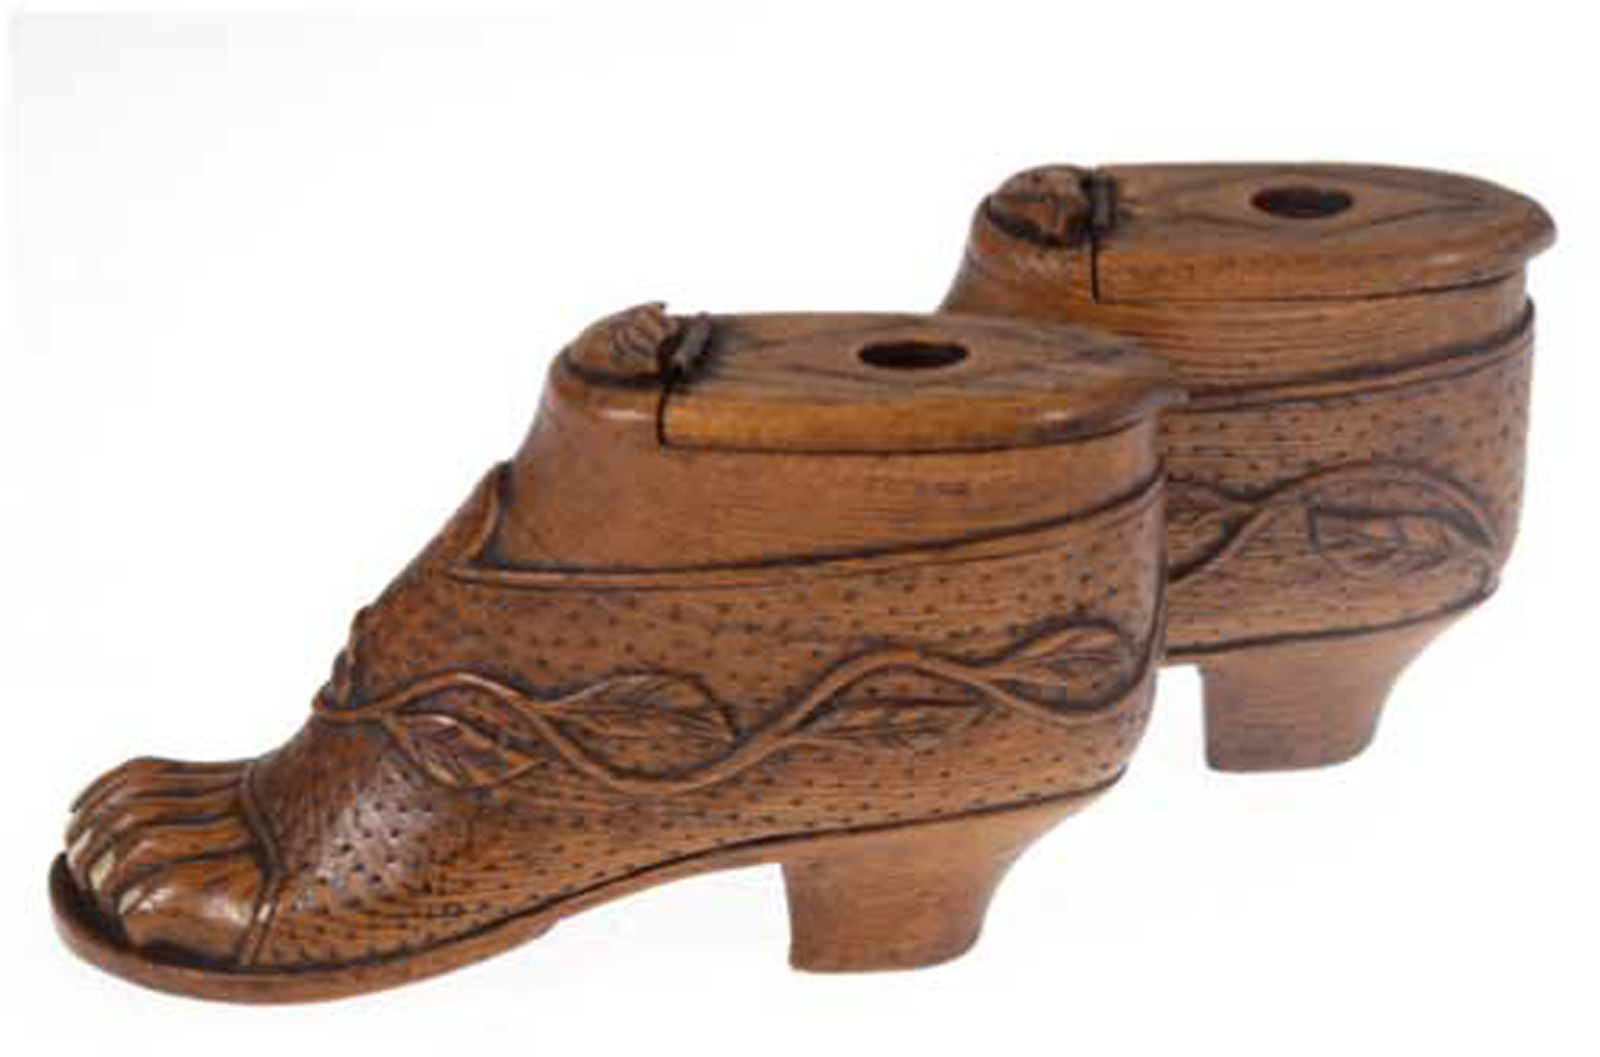 Paar Schnupftabakdosen in Sandalenform, England um 1800, Holz, geschnitzte Blattranke, im Deckel 3